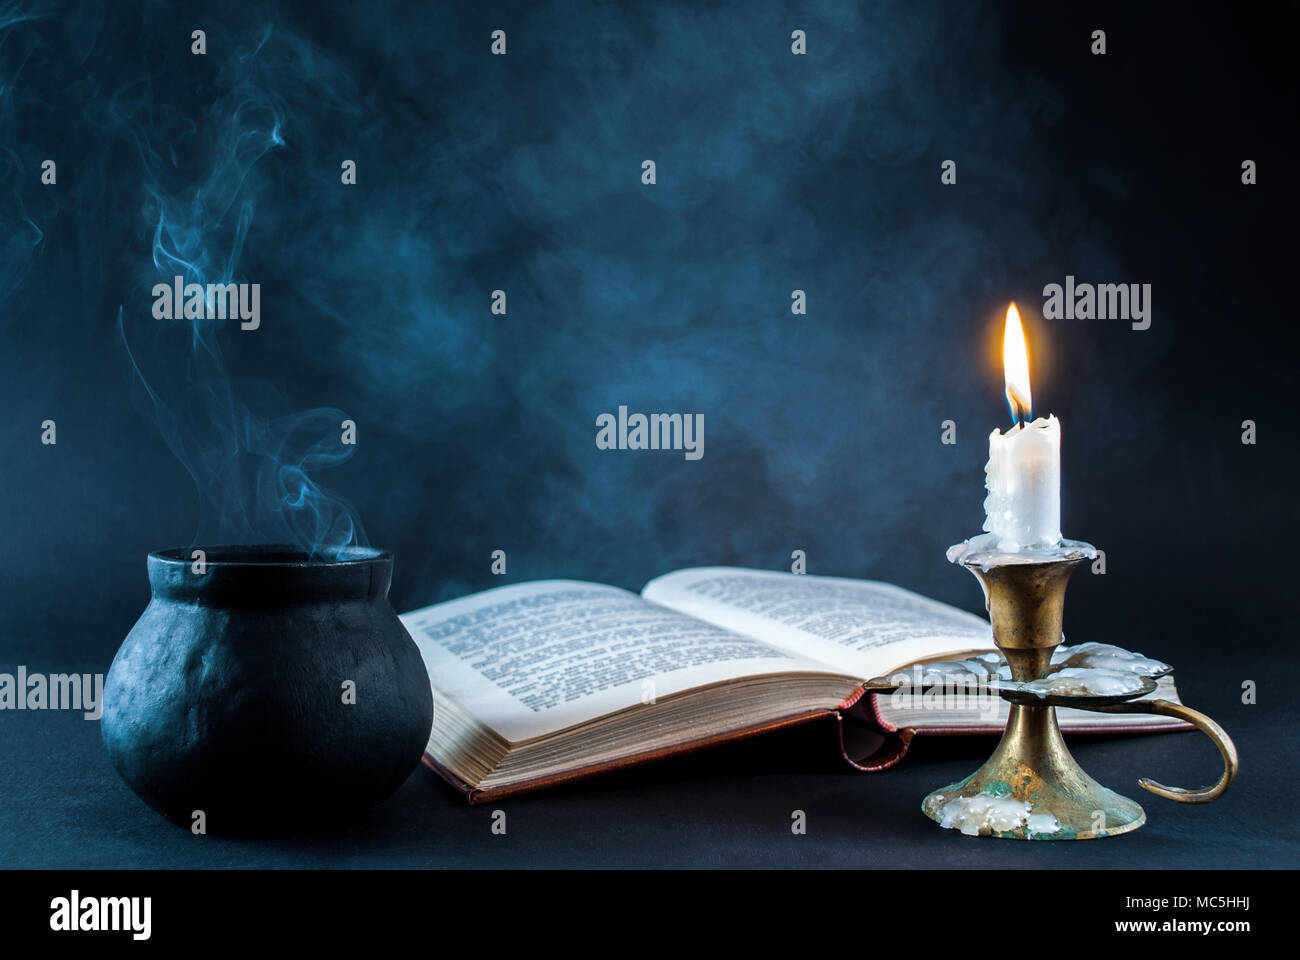 Kerze im Leuchter brennen und rauchigen Topf und alten Buch öffnen auf dunklen und weißen Hintergrund. Halloween Konzept Stockfoto